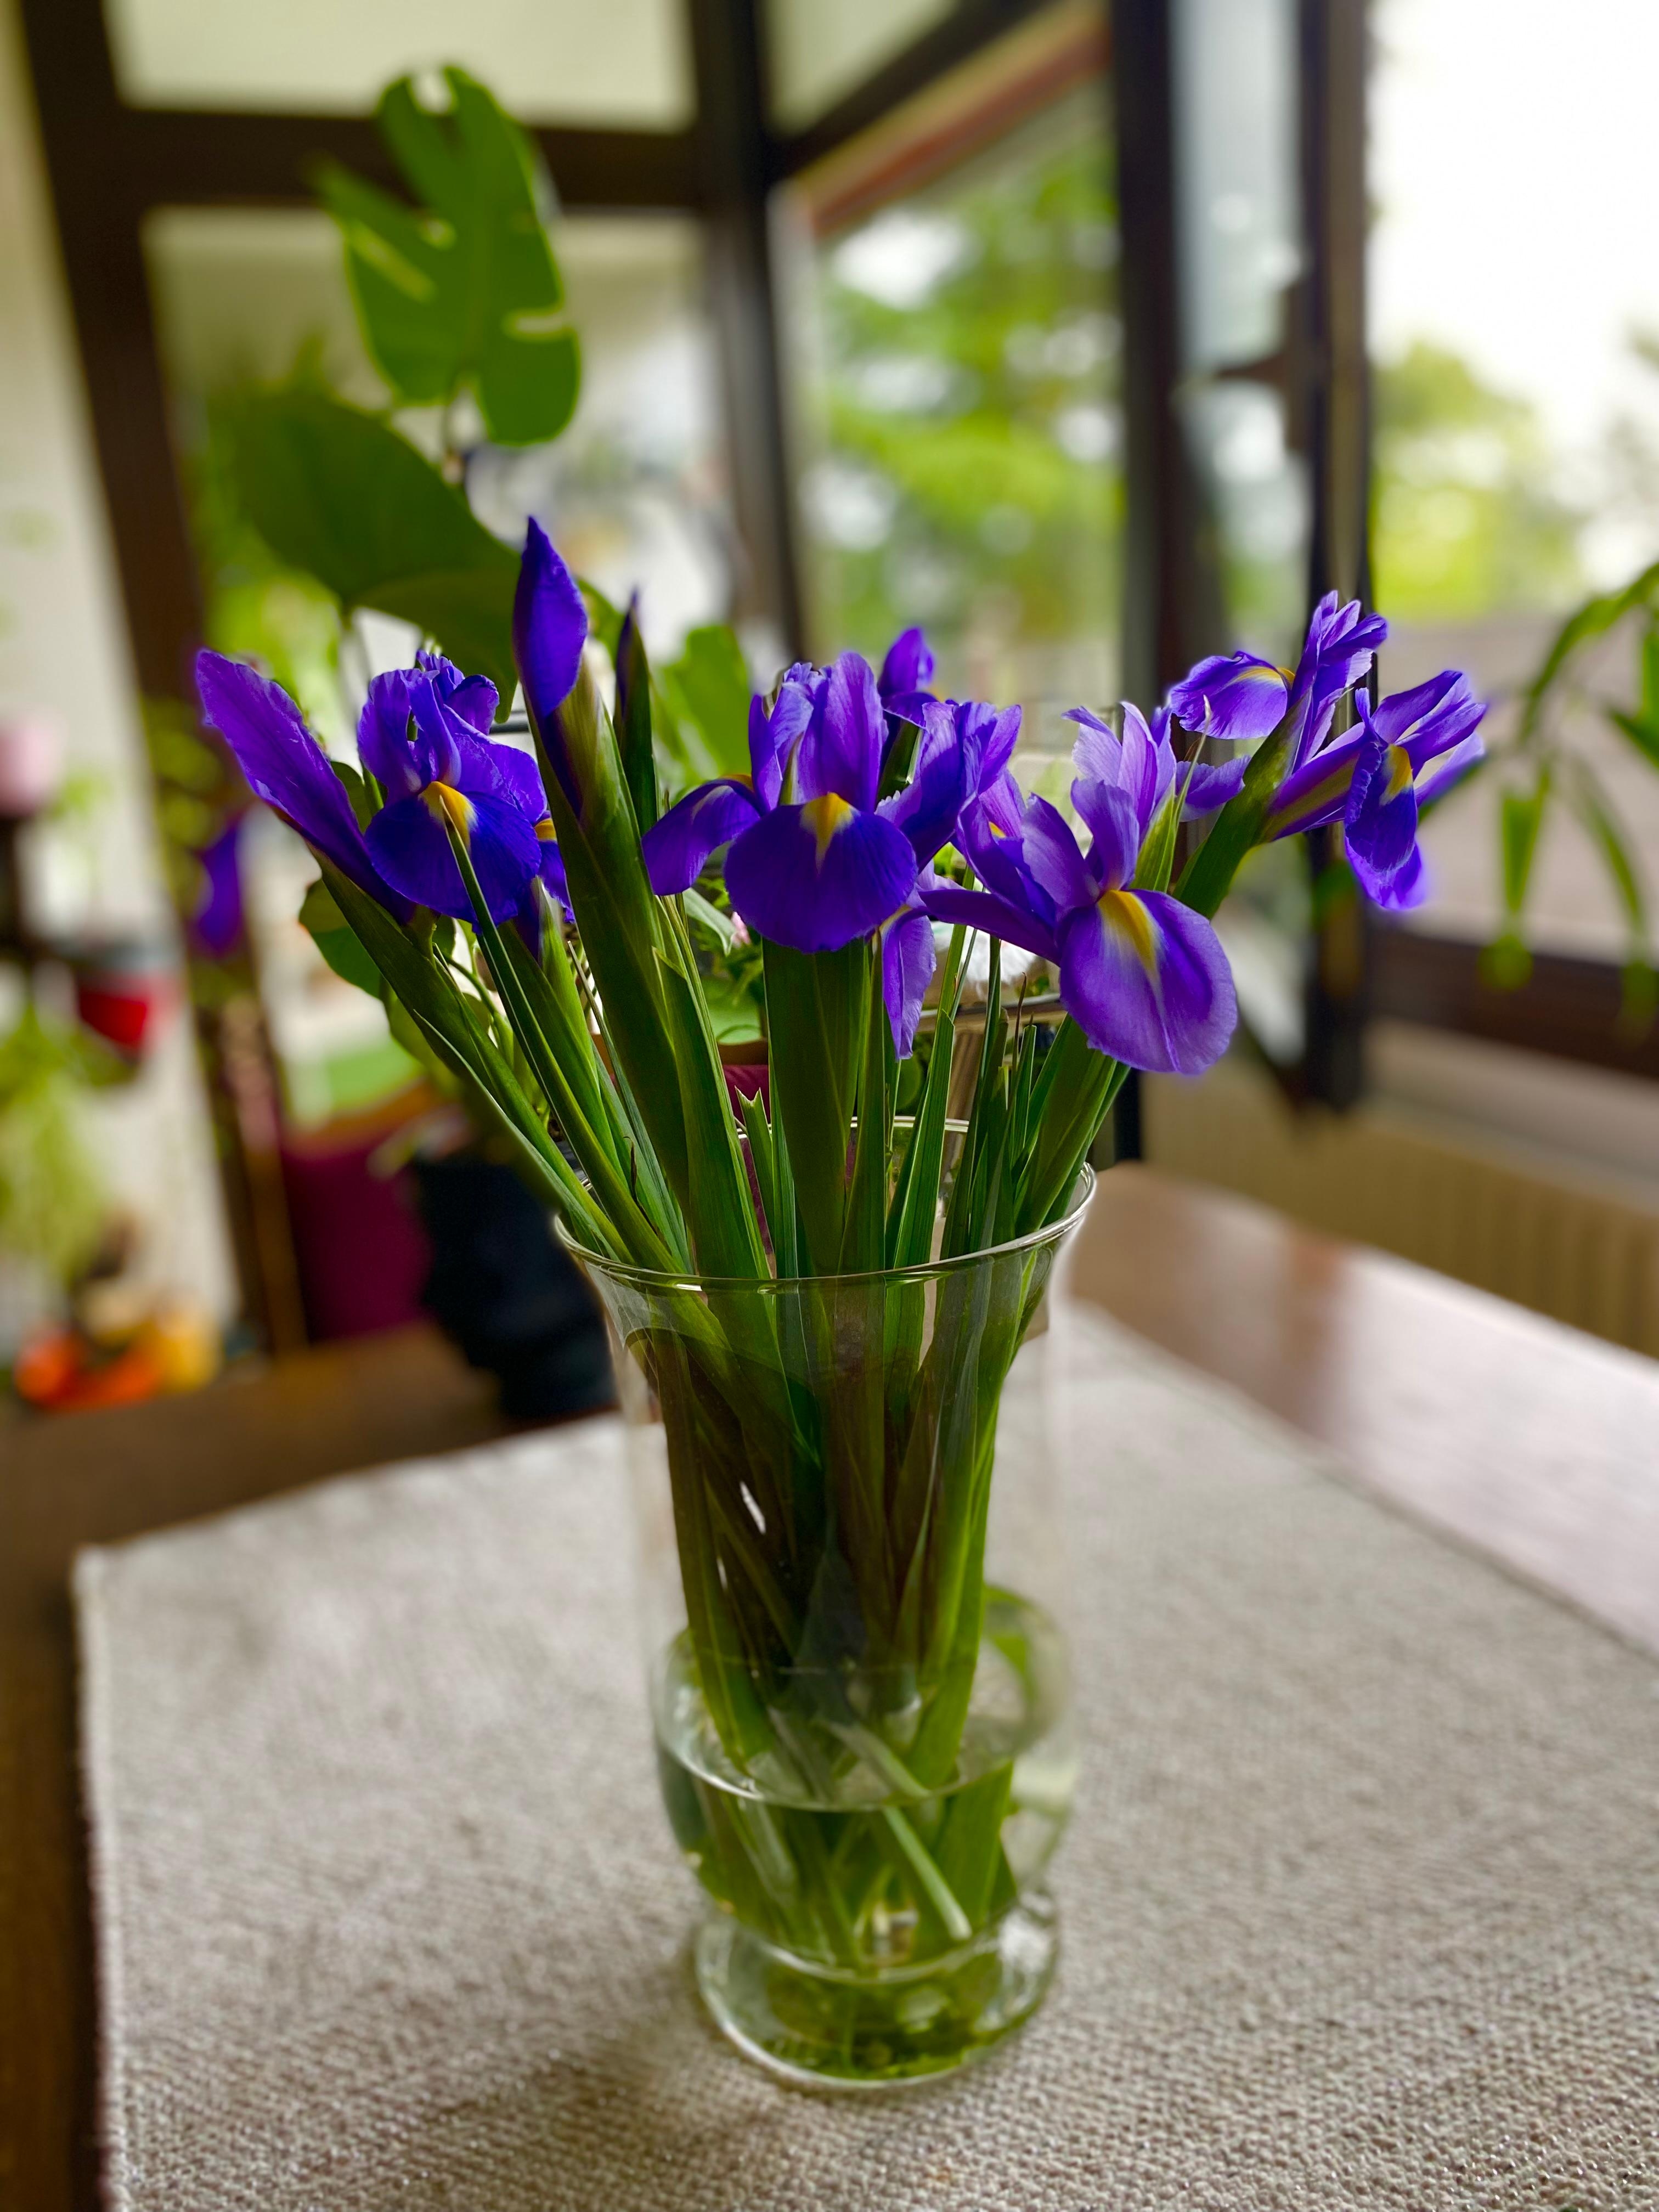 #couchliebt #iris #blumenliebe
Diese Blume sieht man seltener in Vasen, da giftig. Aber ich finde sie so schön 🤩 
